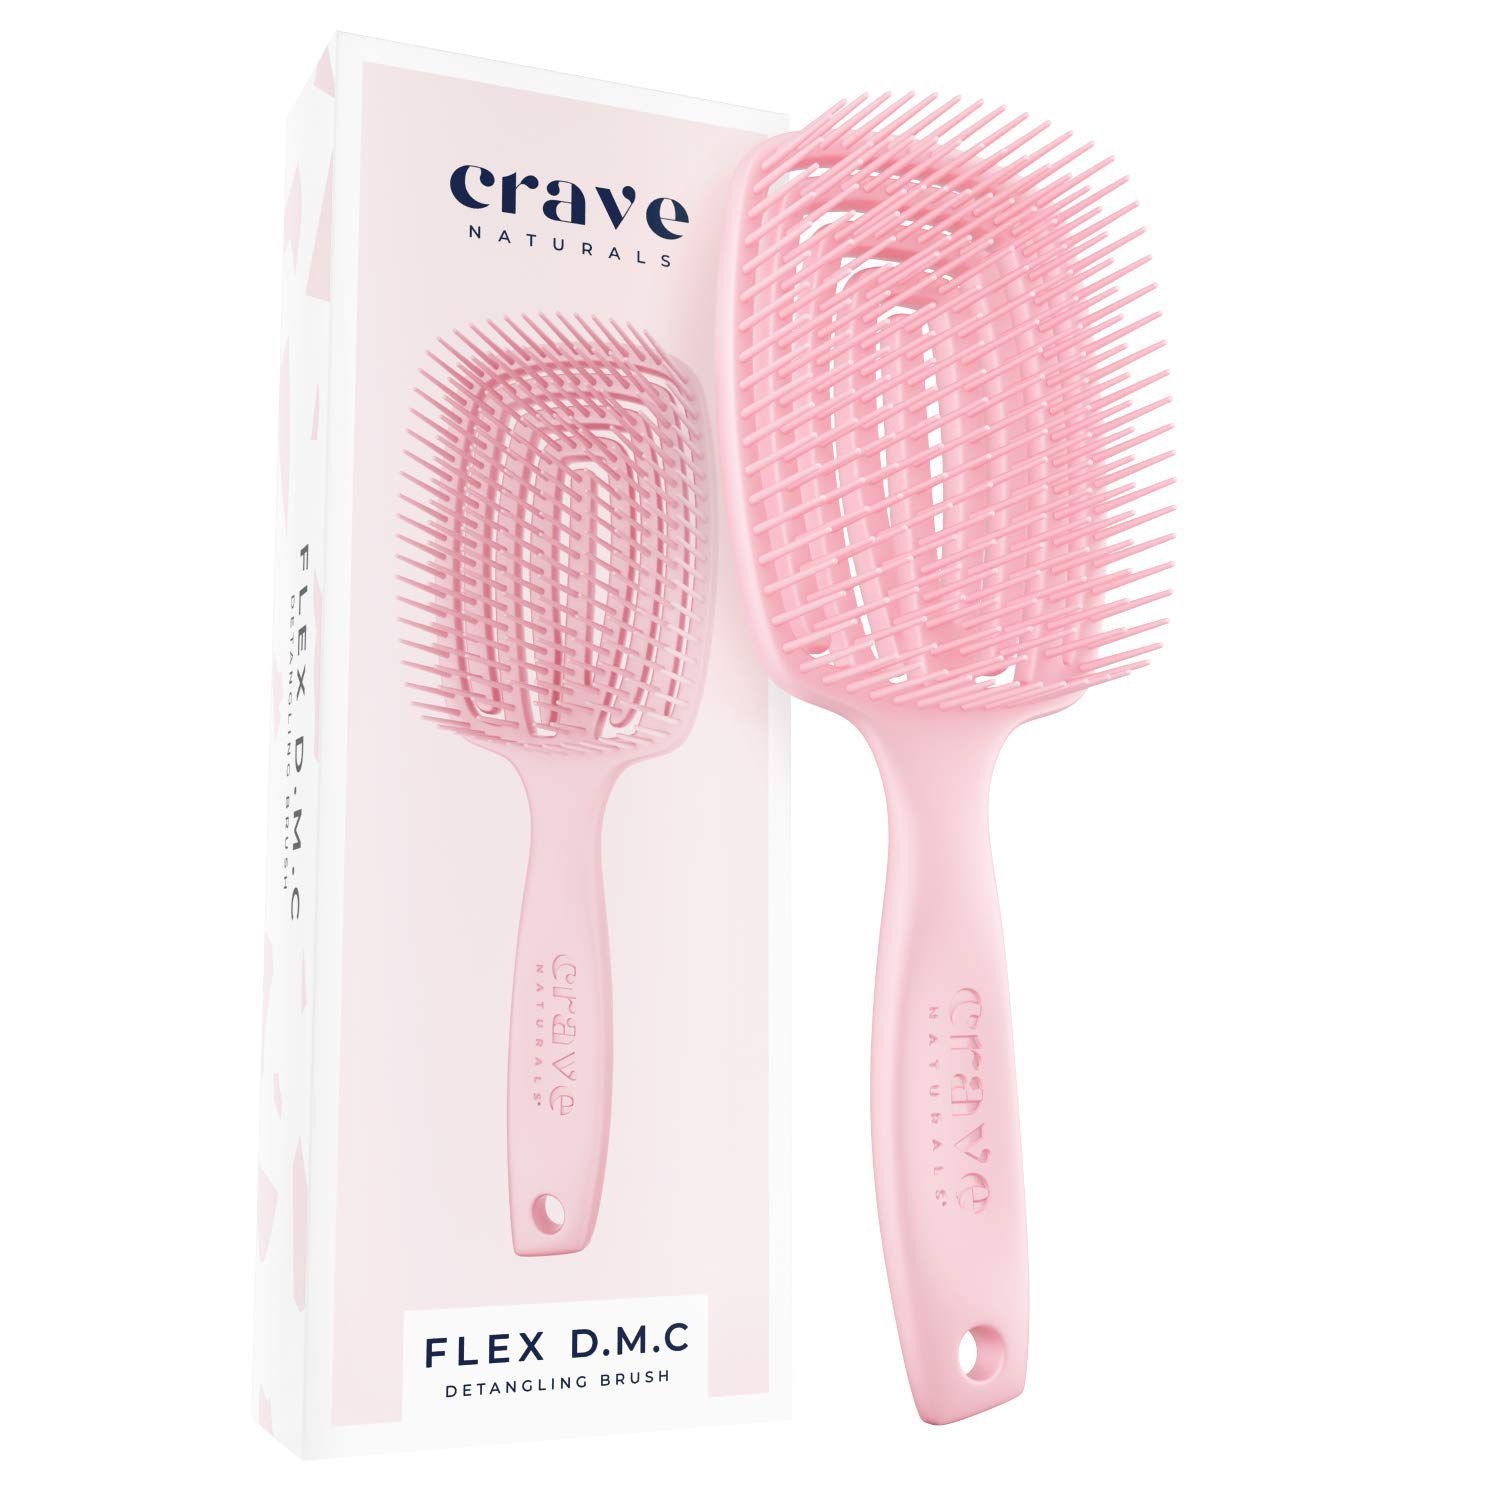 Crave Naturals FLEX DMC detangling børste til naturligt tekstureret hår